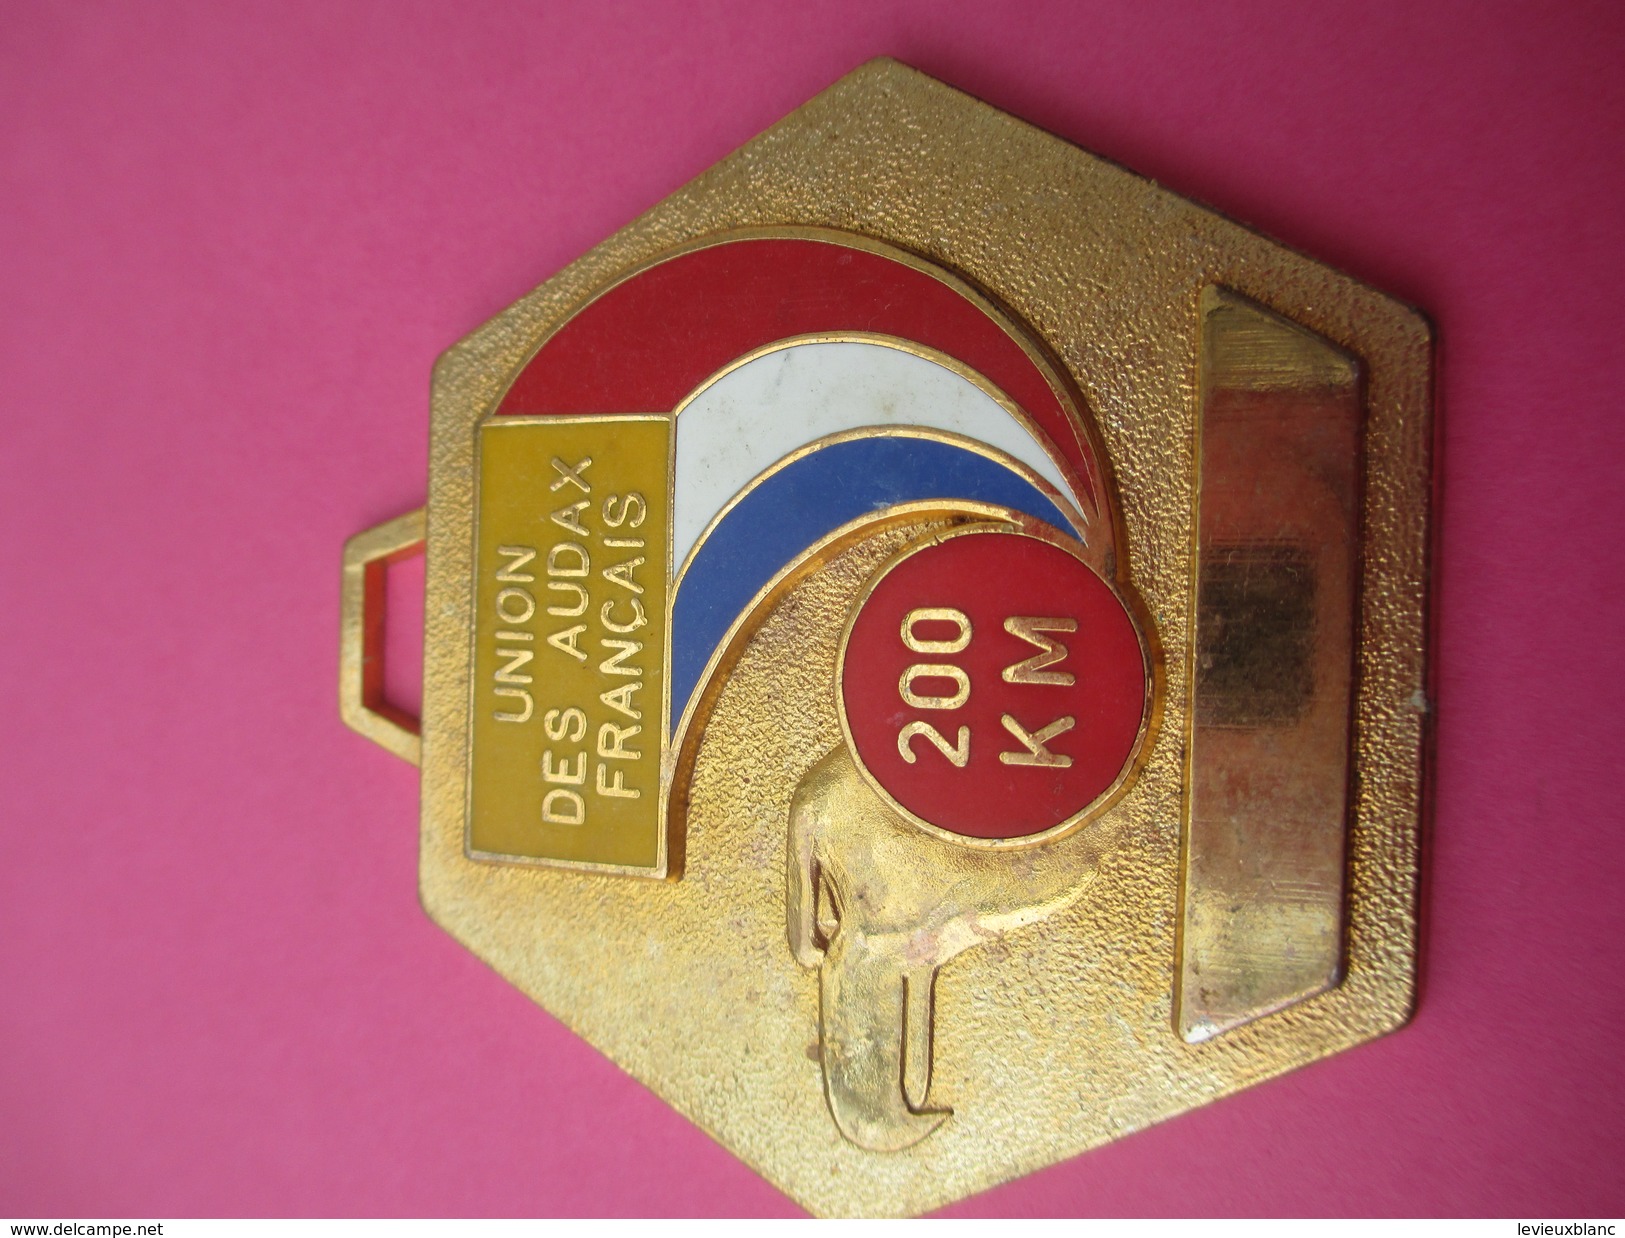 Médaille / Union Des Audax Français / Cyclisme / 200 Km/Bronze Doré/ Vers 1980               SPO175 - Cycling